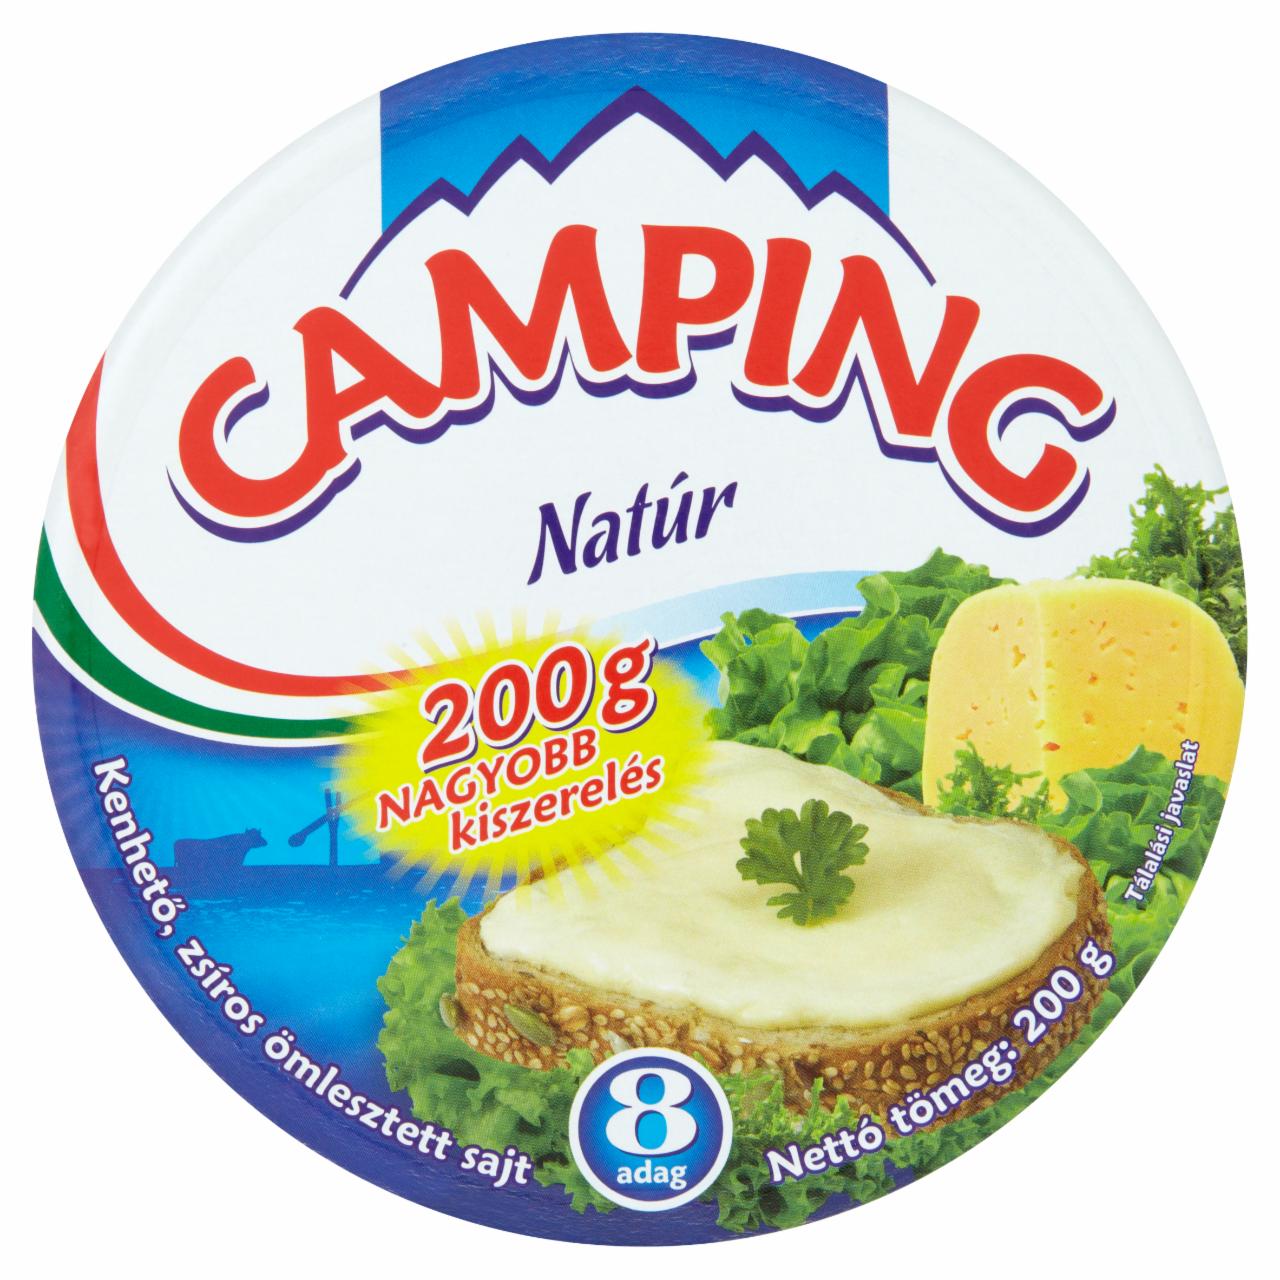 Képek - Camping gluténmentes natúr kenhető ömlesztett sajt 8 db 200 g